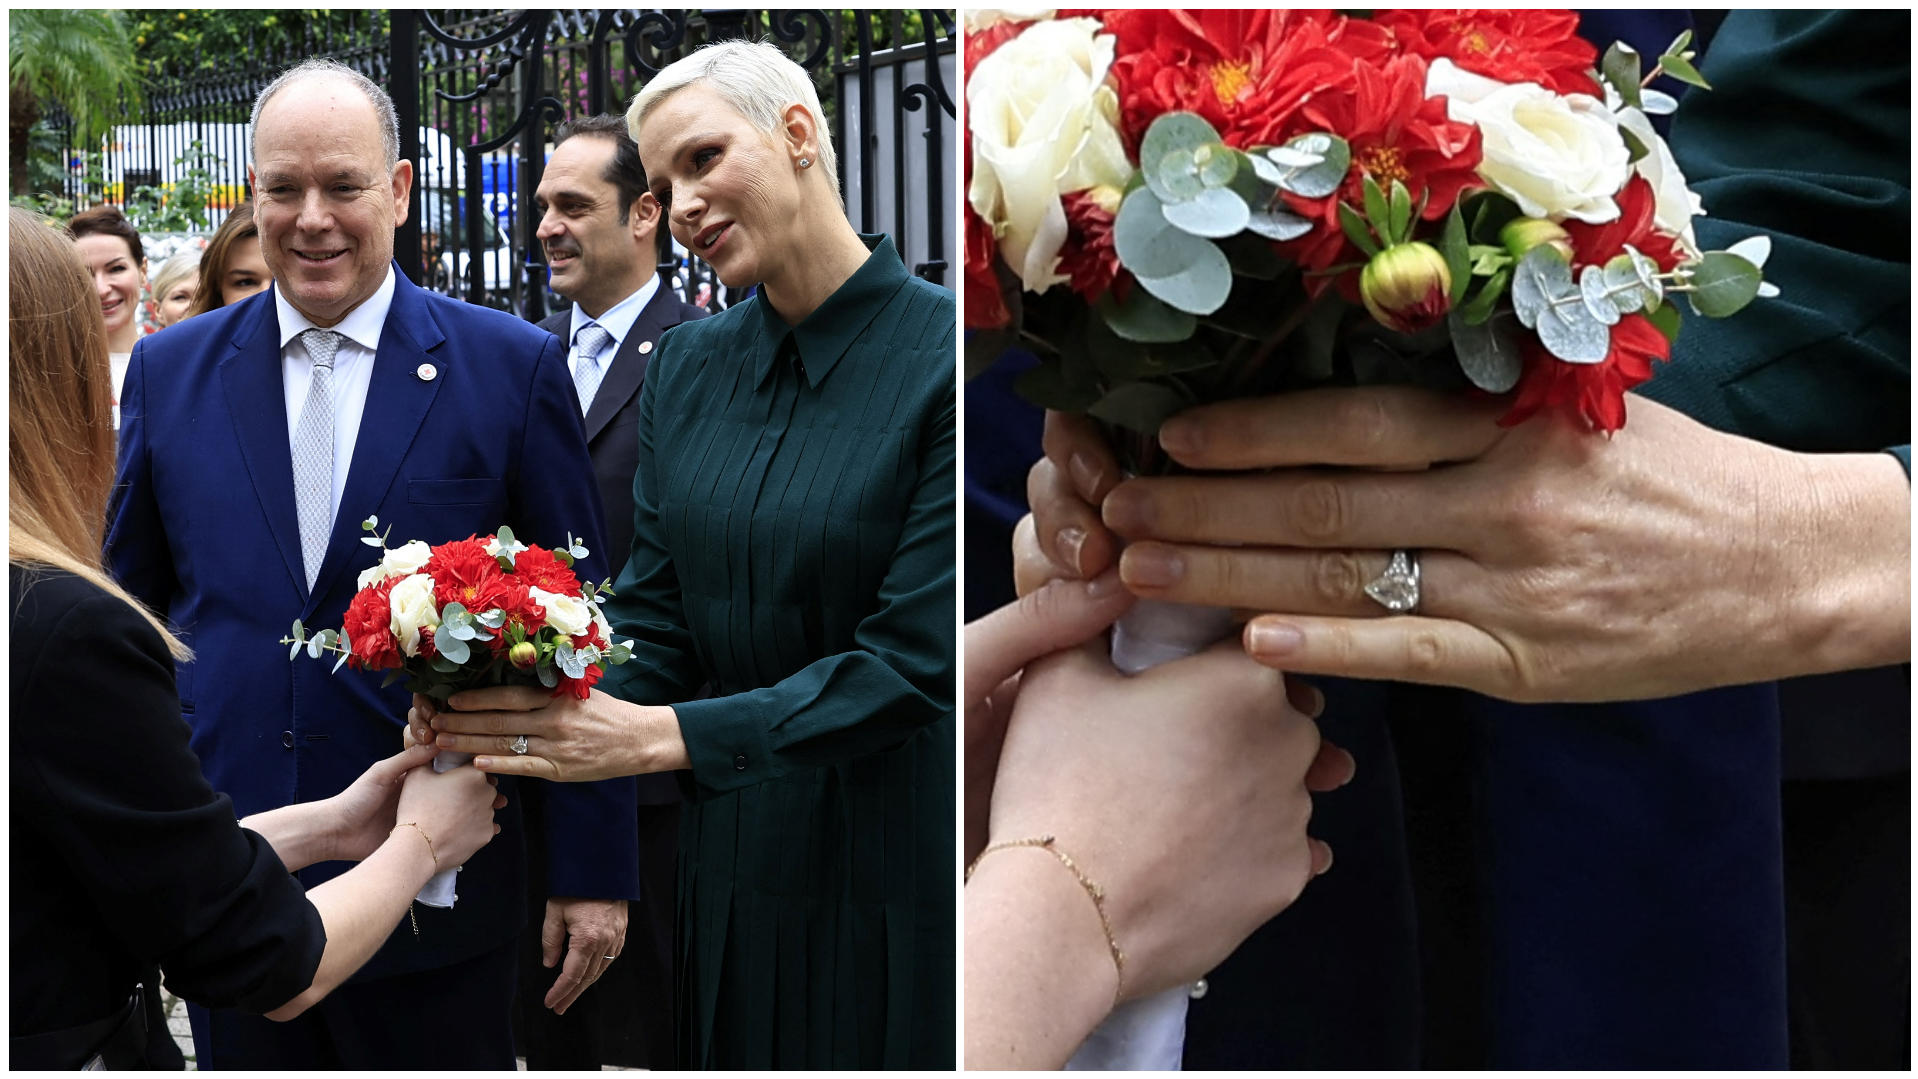 Fürst Albert und Fürstin Charlène nehmen am 16. November 2022 einen Blumenstrauß entgegen. An Charlènes Hand ist ihr Ehering deutlich zu erkennen.